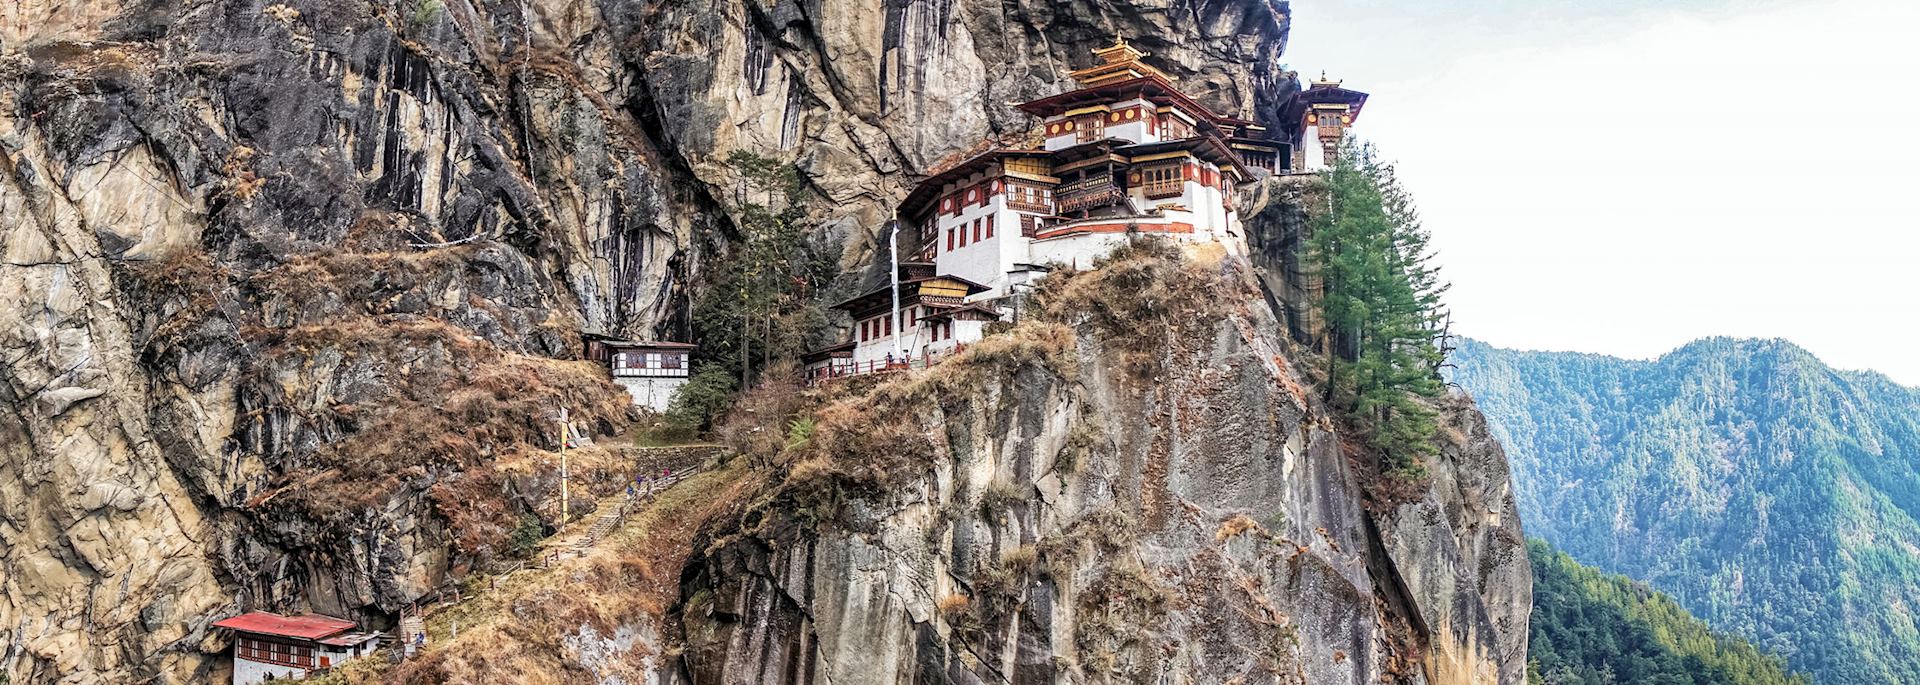 Taktshang Goemba or Tiger's Nest Monastery, Bhutan